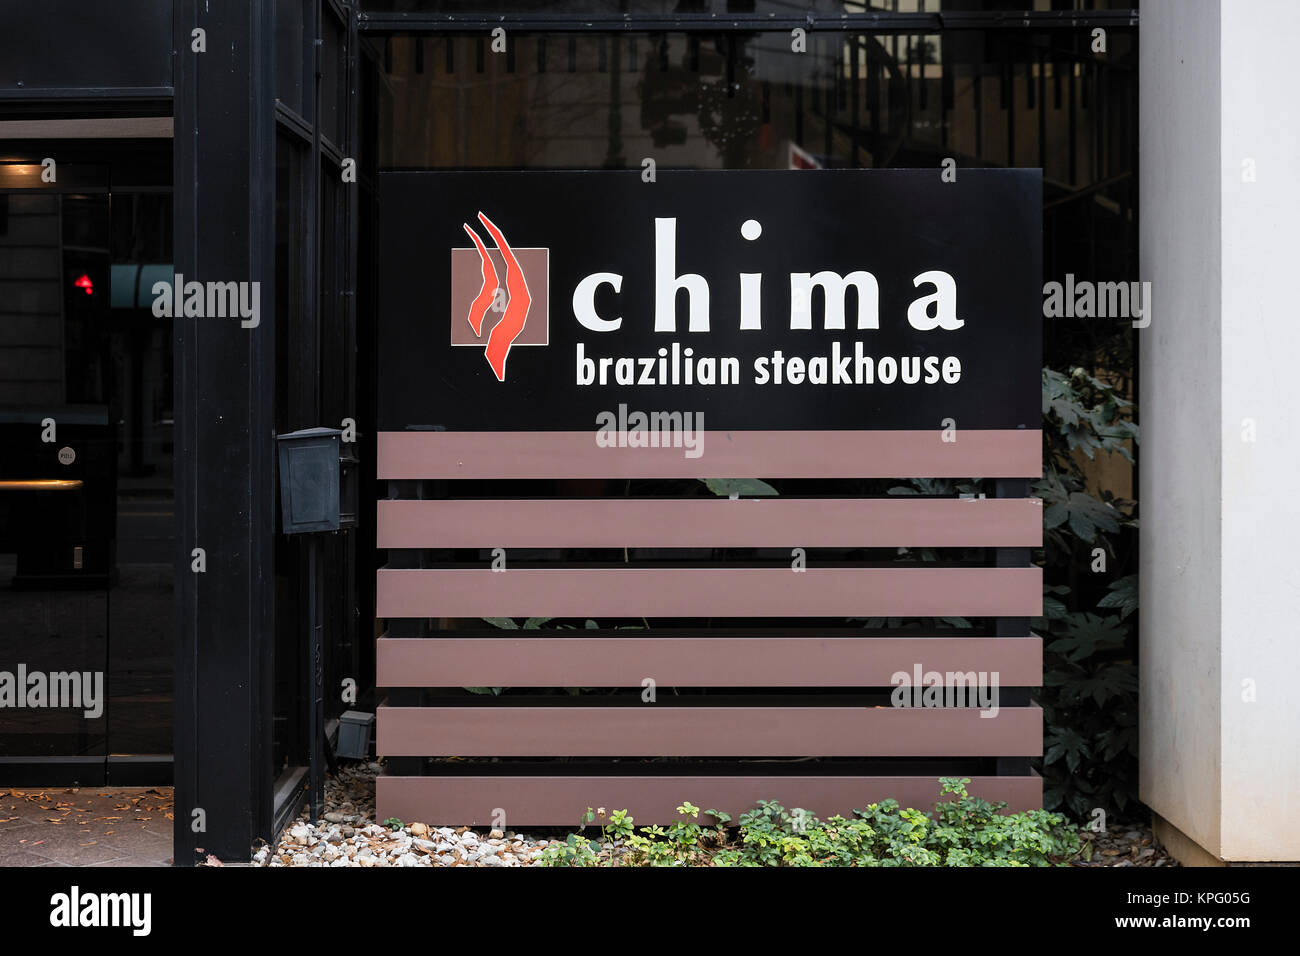 Chima Brazilian Steakhouse restaurant, Charlotte, North Carolina, USA. Stock Photo